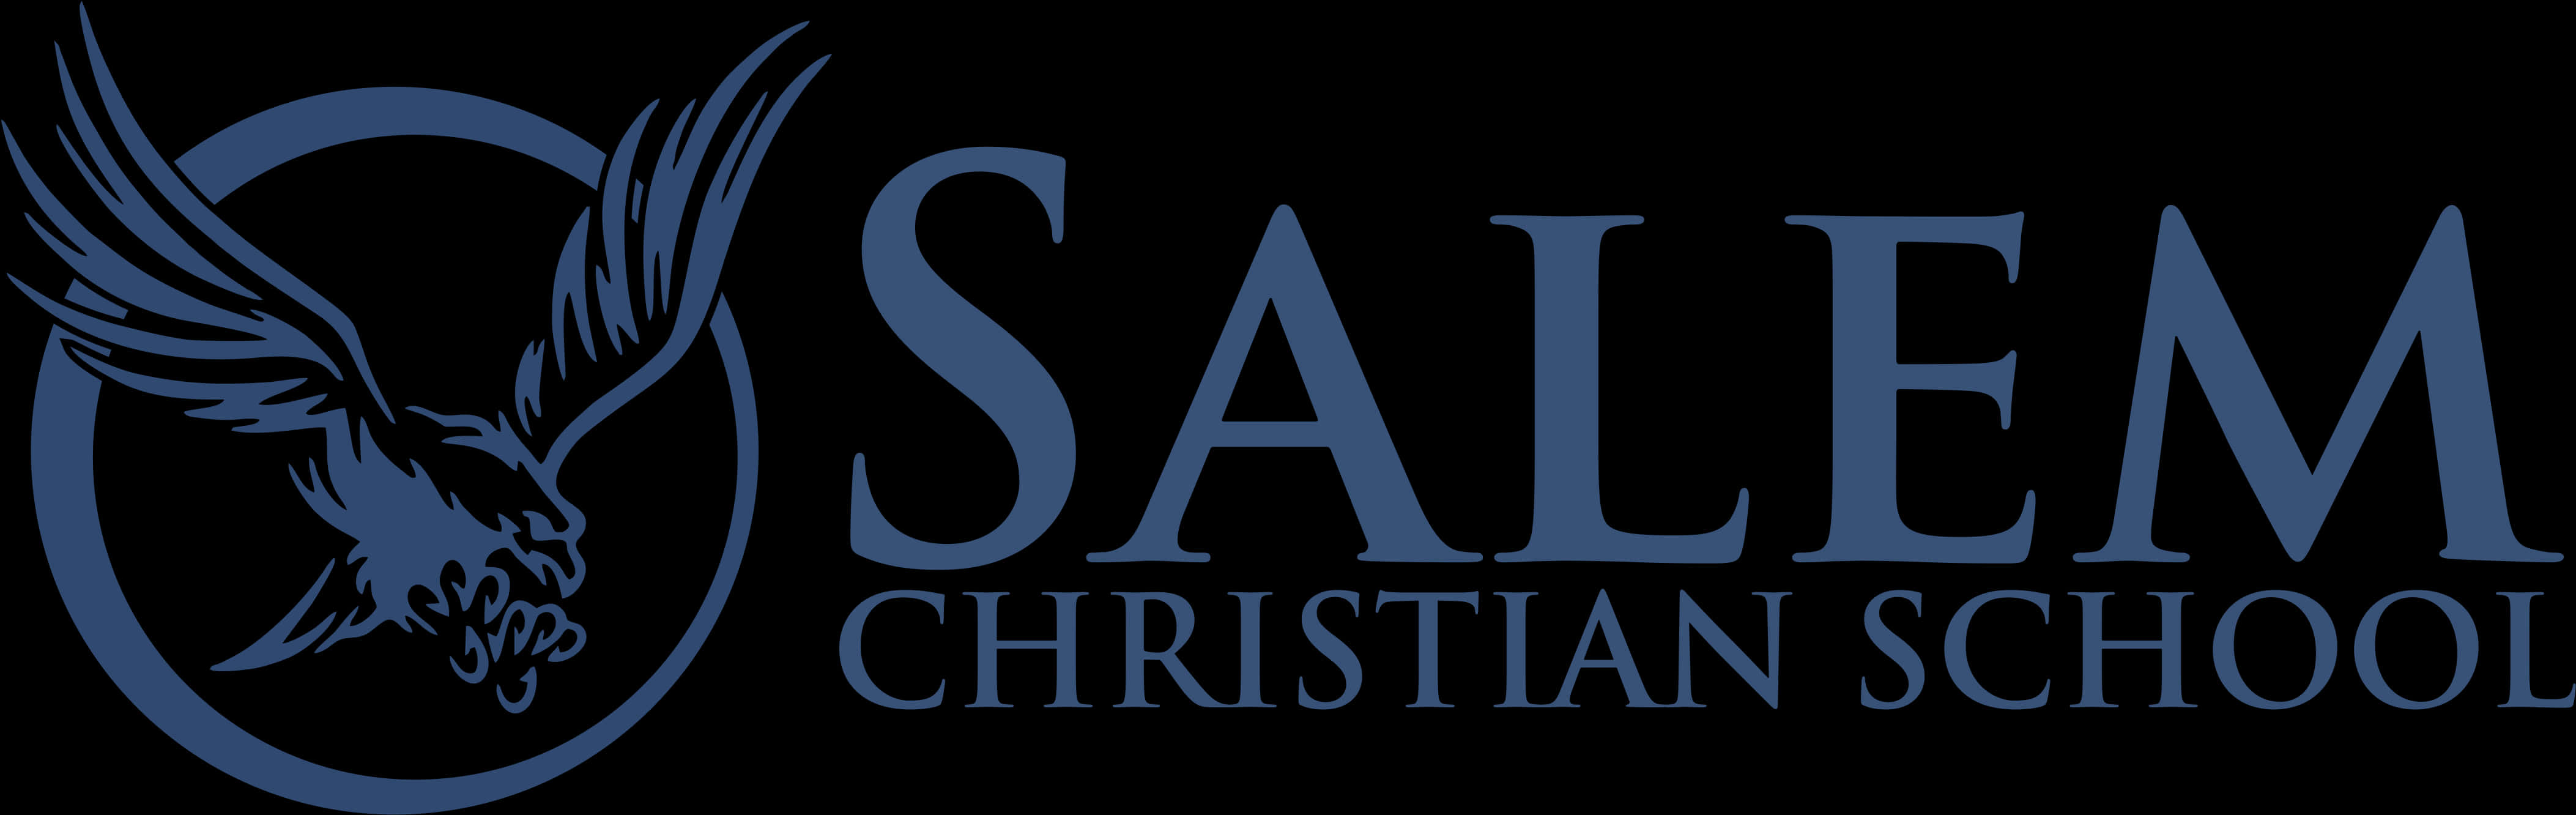 Salem Christian School Eagle Logo PNG image